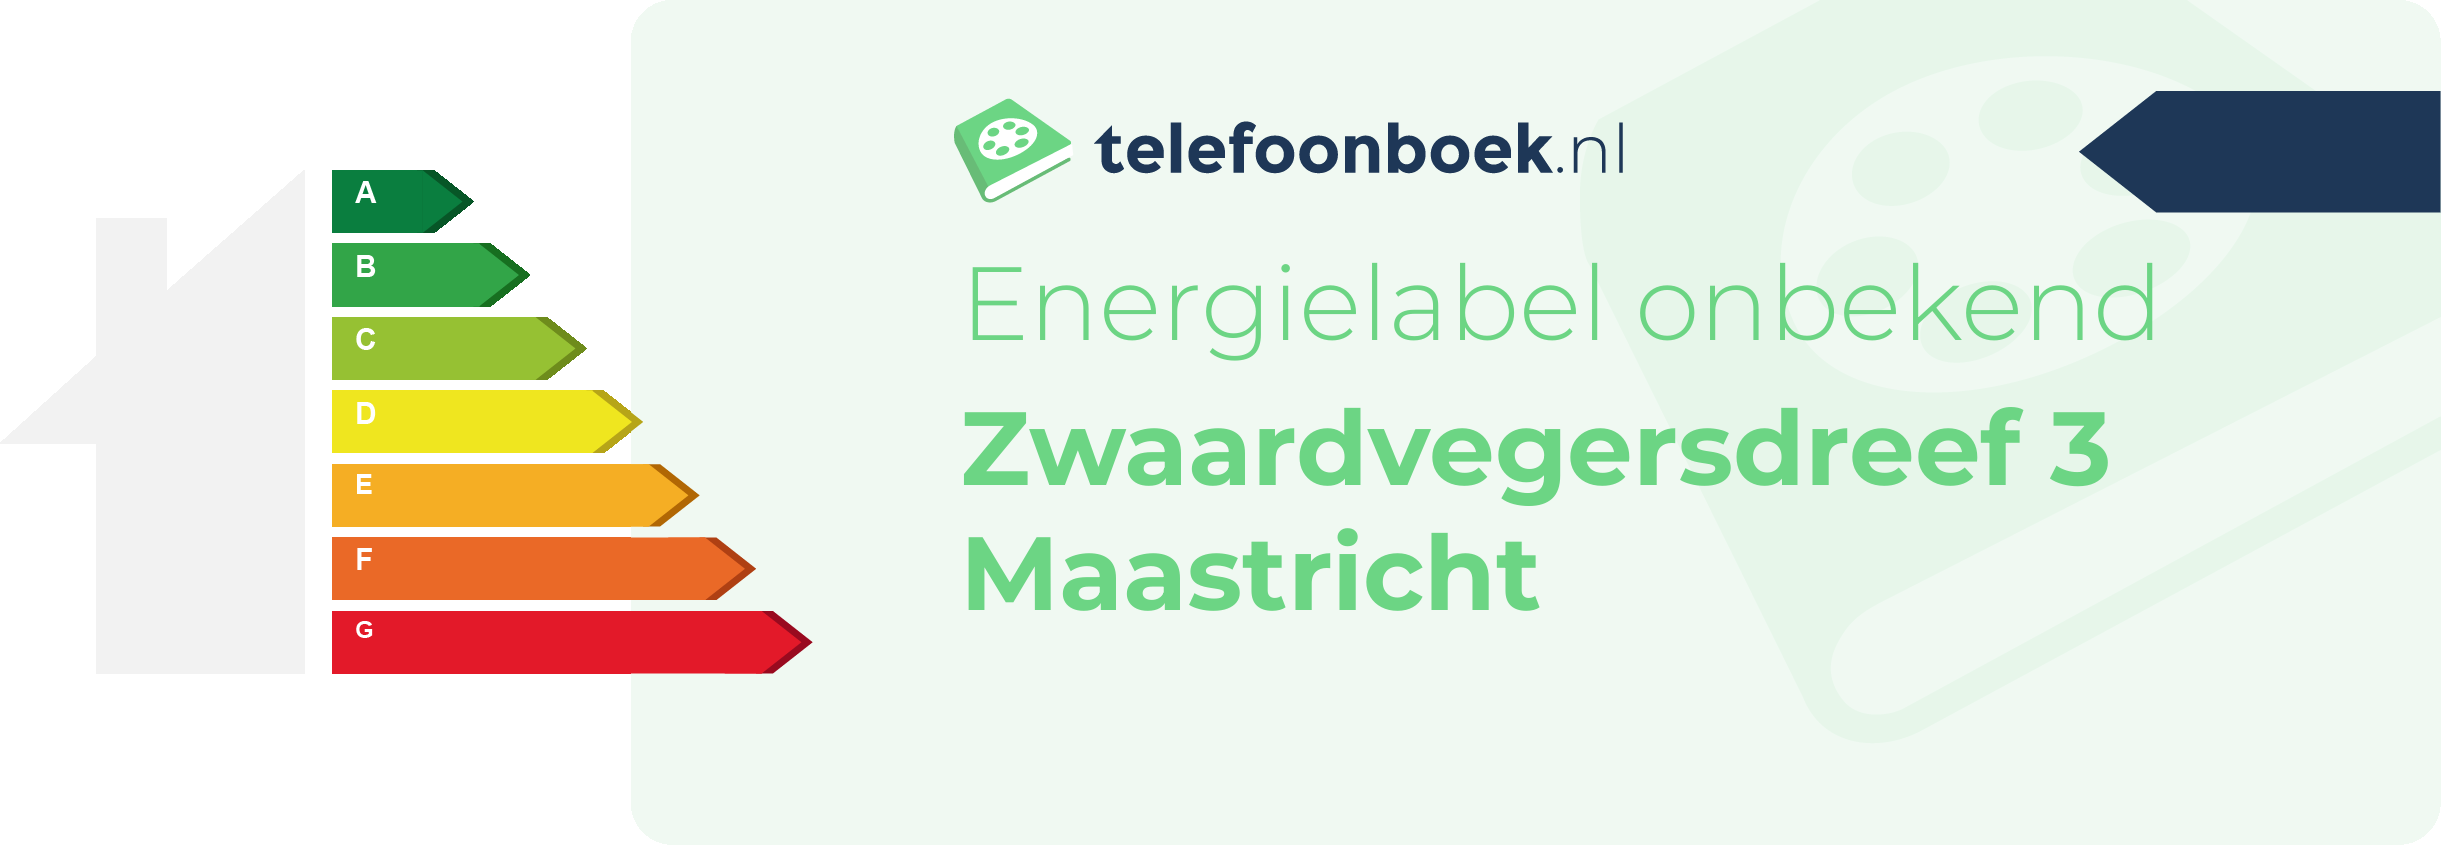 Energielabel Zwaardvegersdreef 3 Maastricht